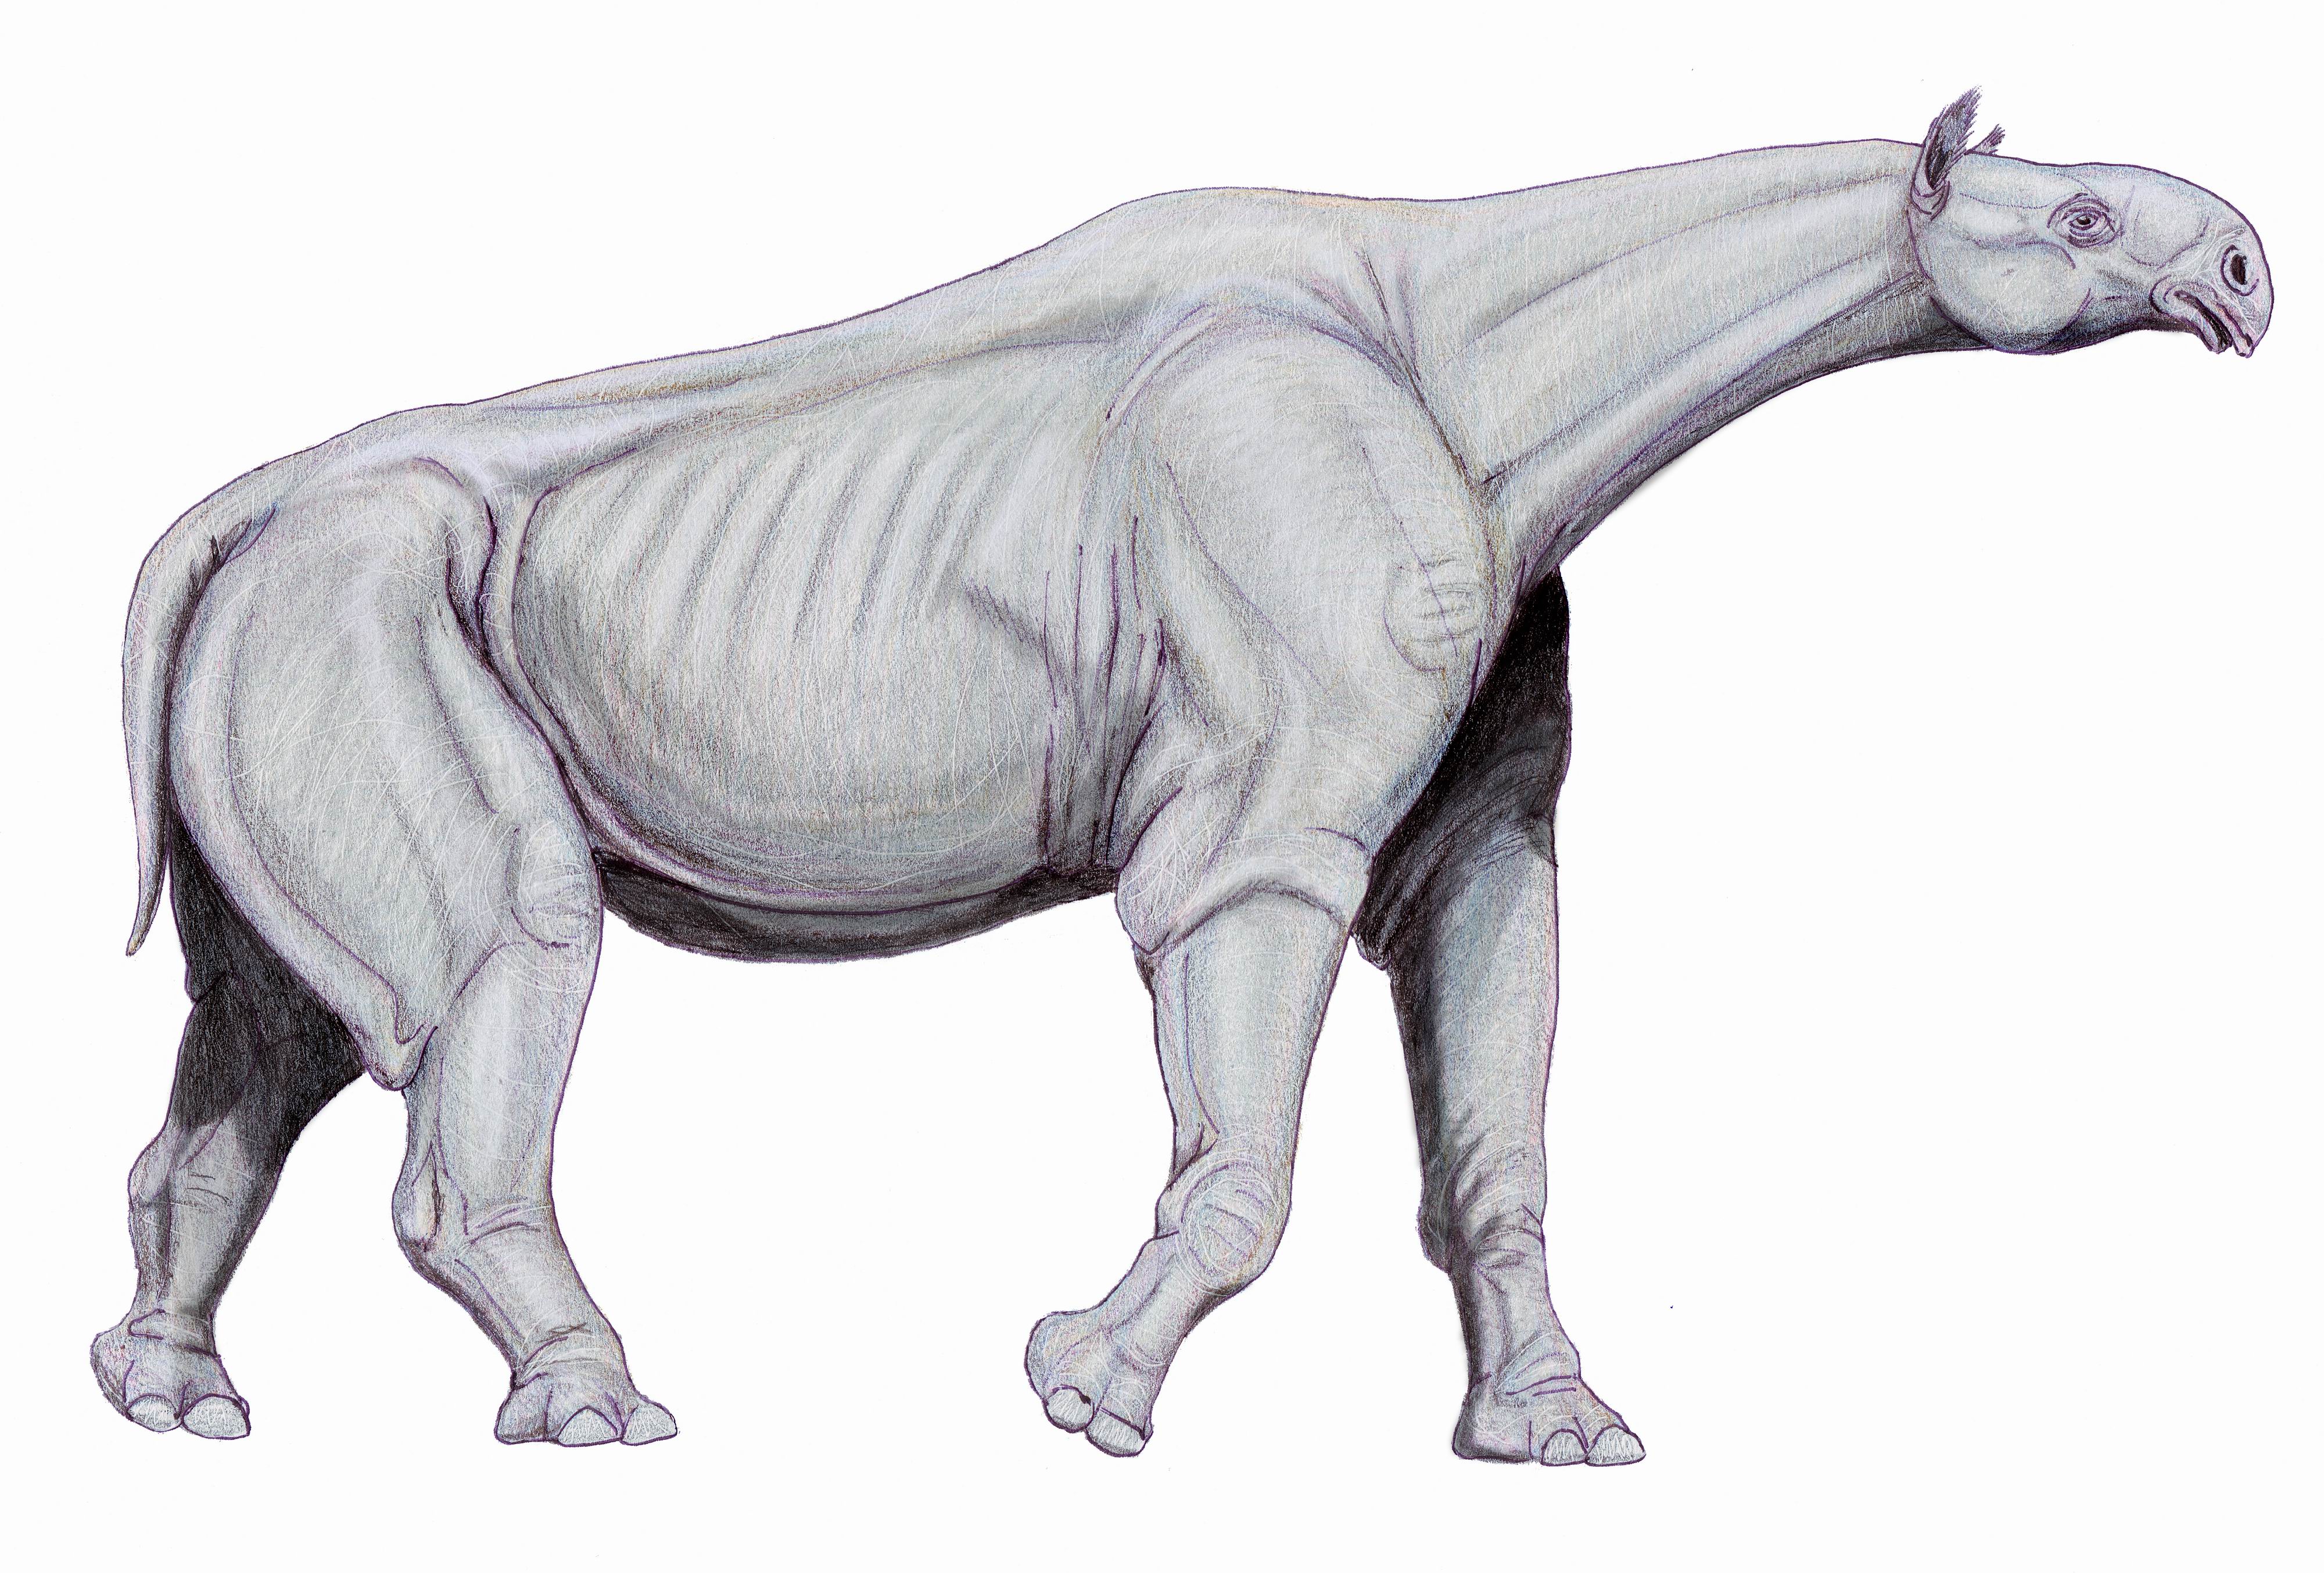 Indricotherium – Indricotherium transouralicum - Dinosaurs